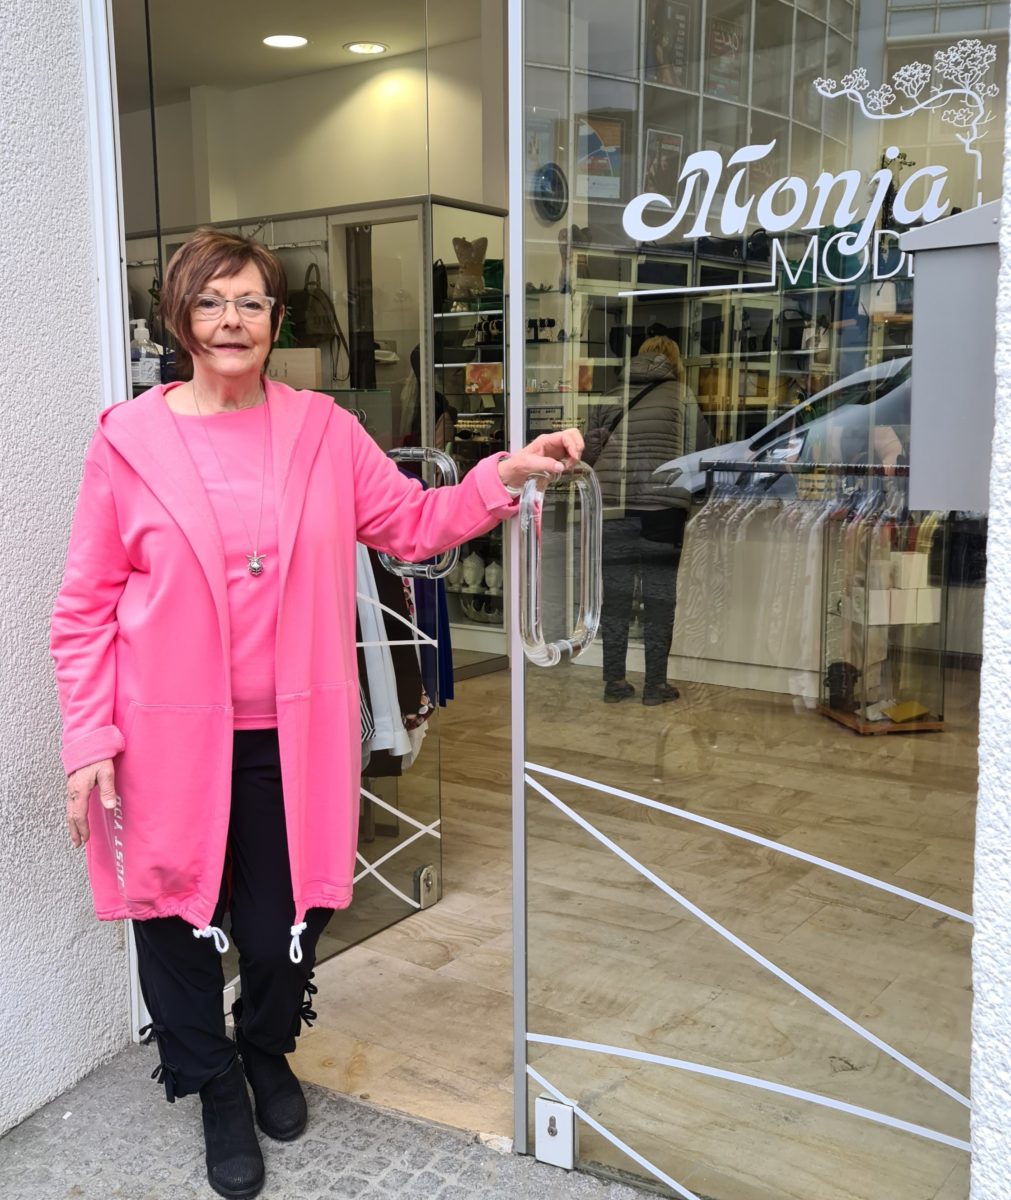 Inhaberin Monika Karkowski vor dem Eingang ihrer Boutique Monja Moden auf der Antoniusstraße 17